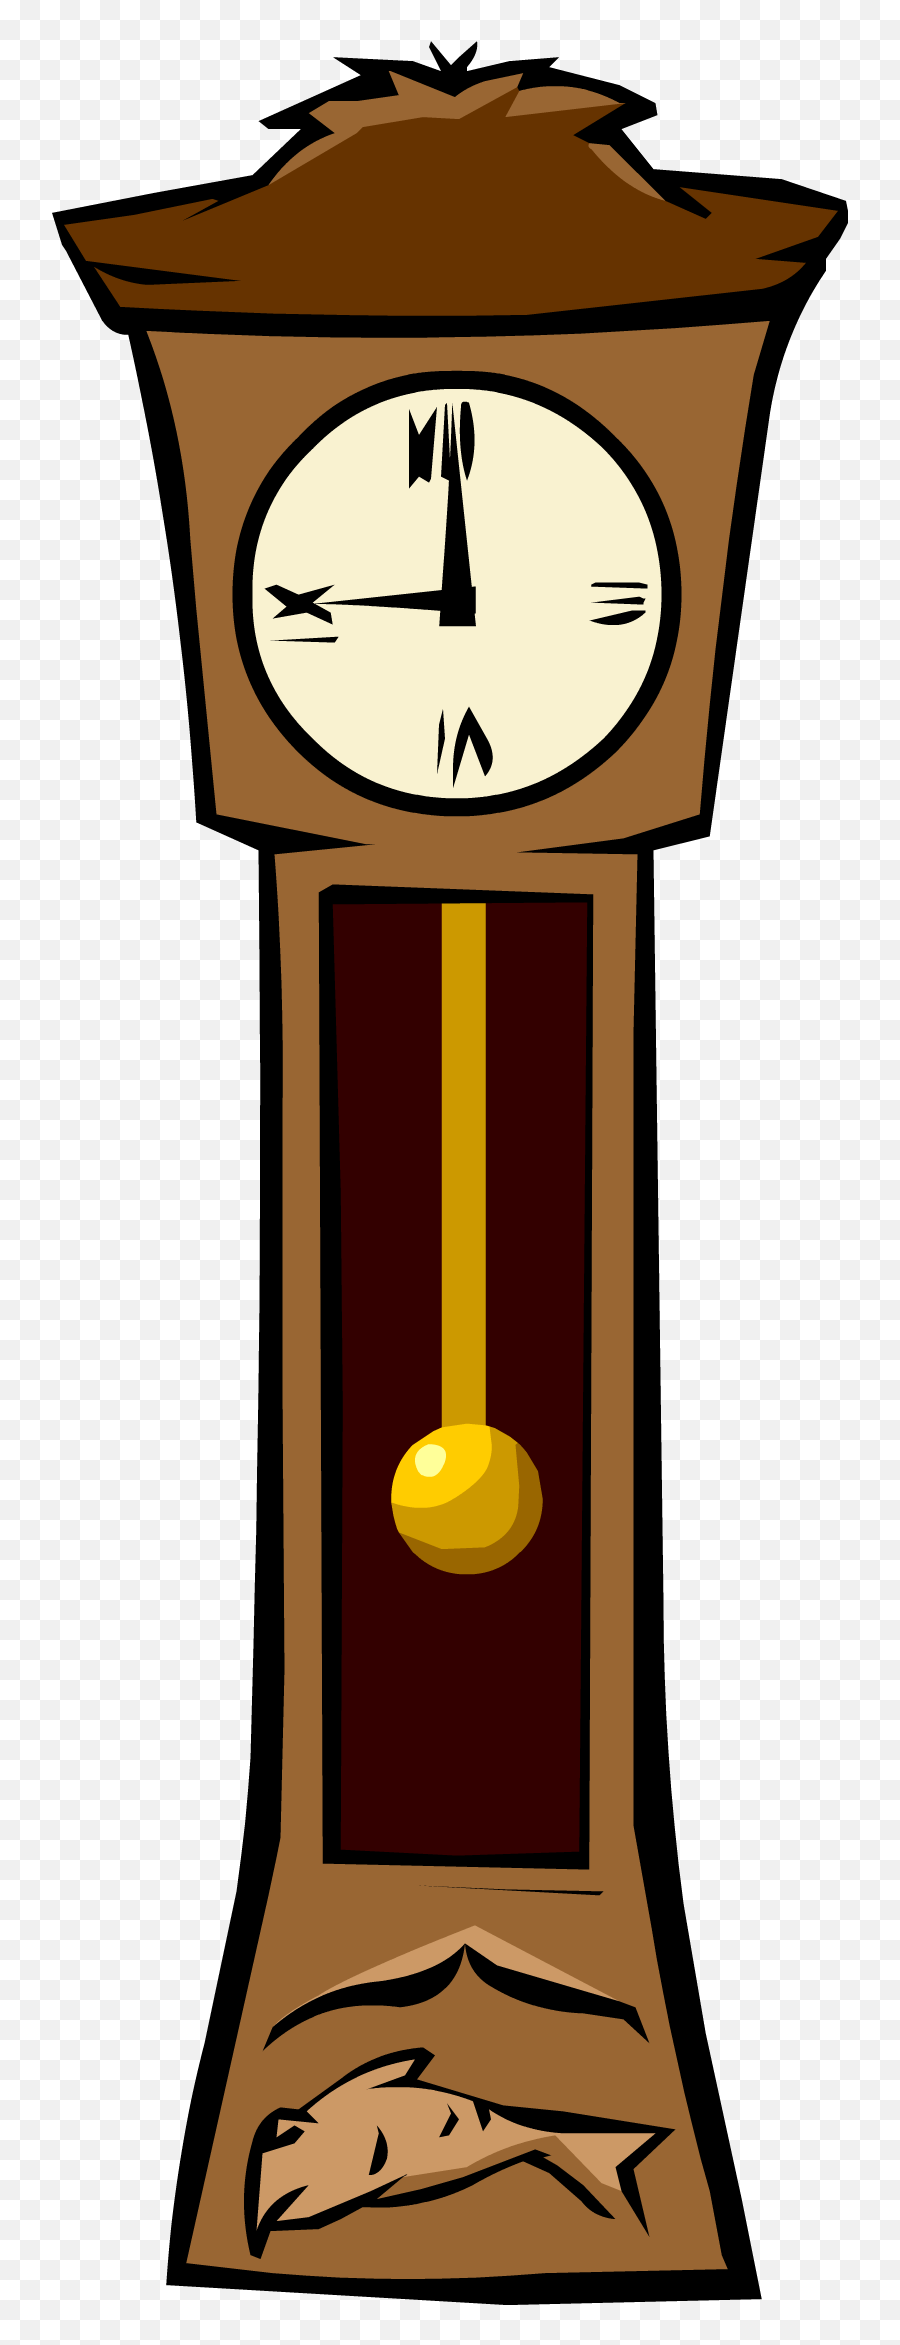 grandpa clock emoji